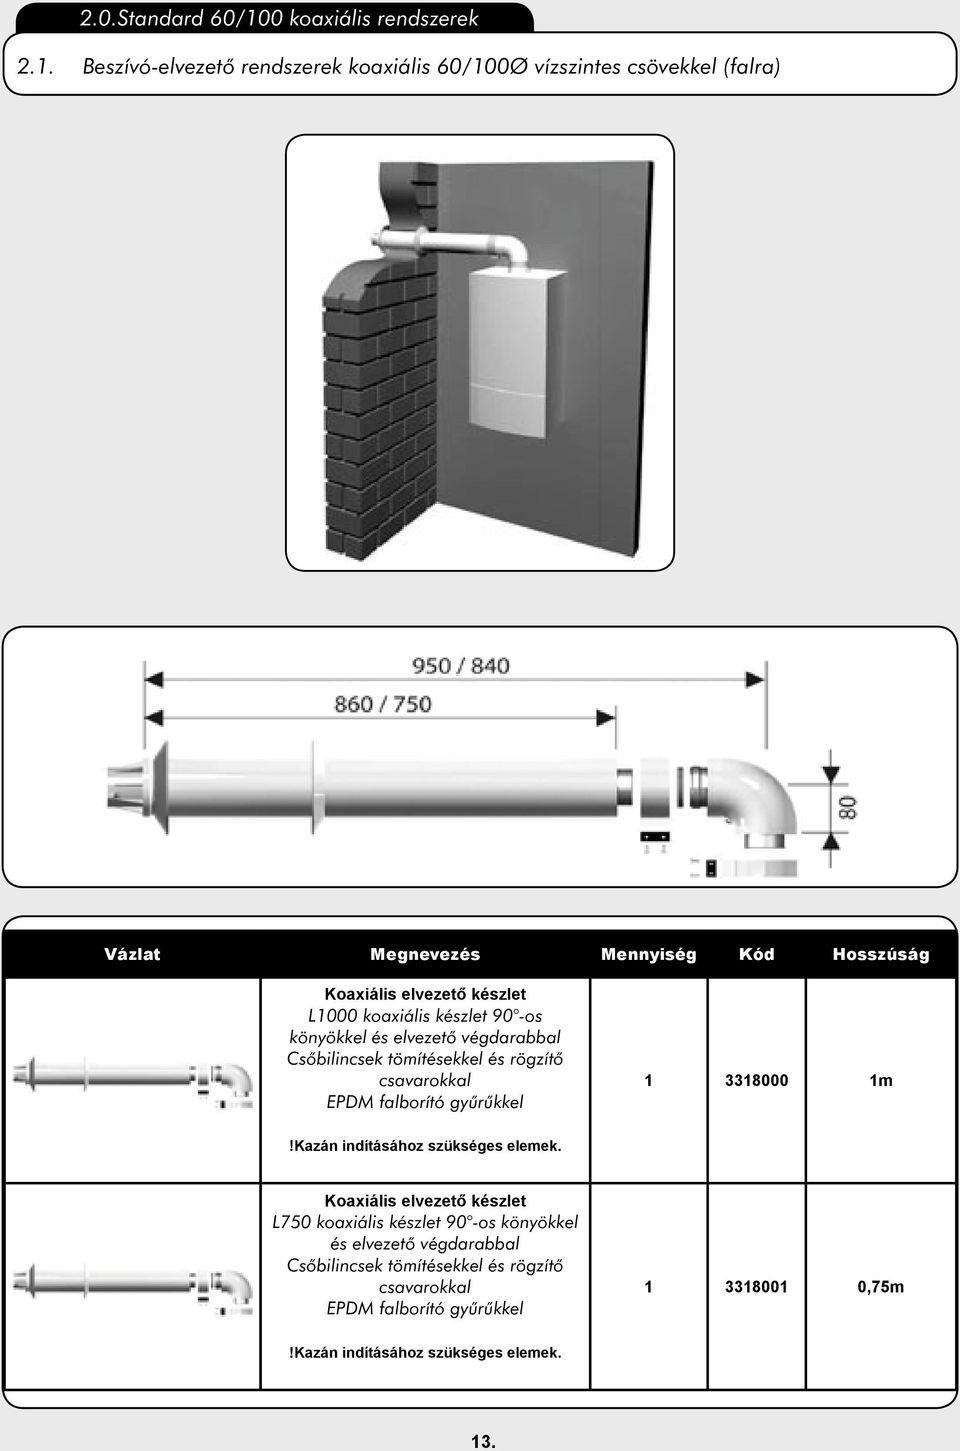 Beszívó-elvezetõ rendszerek koaxiális 60/100Ø vízszintes csövekkel (falra) Koaxiális elvezető készlet L1000 koaxiális készlet 90 -os